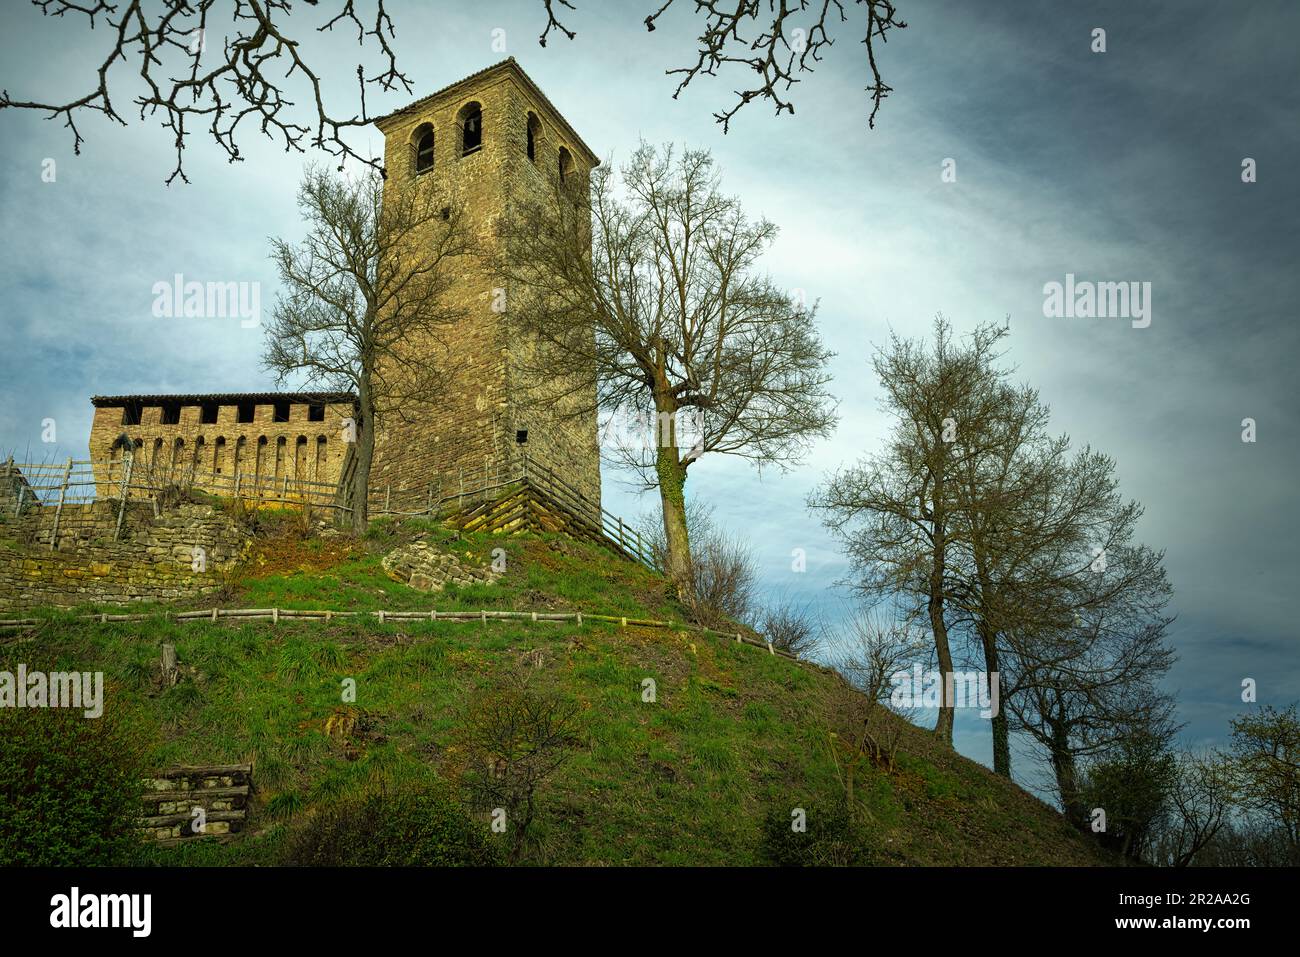 El castillo de Sarzano es uno de los castillos medievales de las tierras Matildic. Casina , Reggio Emilia provincia, Emilia Romaña, Italia, Europa Foto de stock